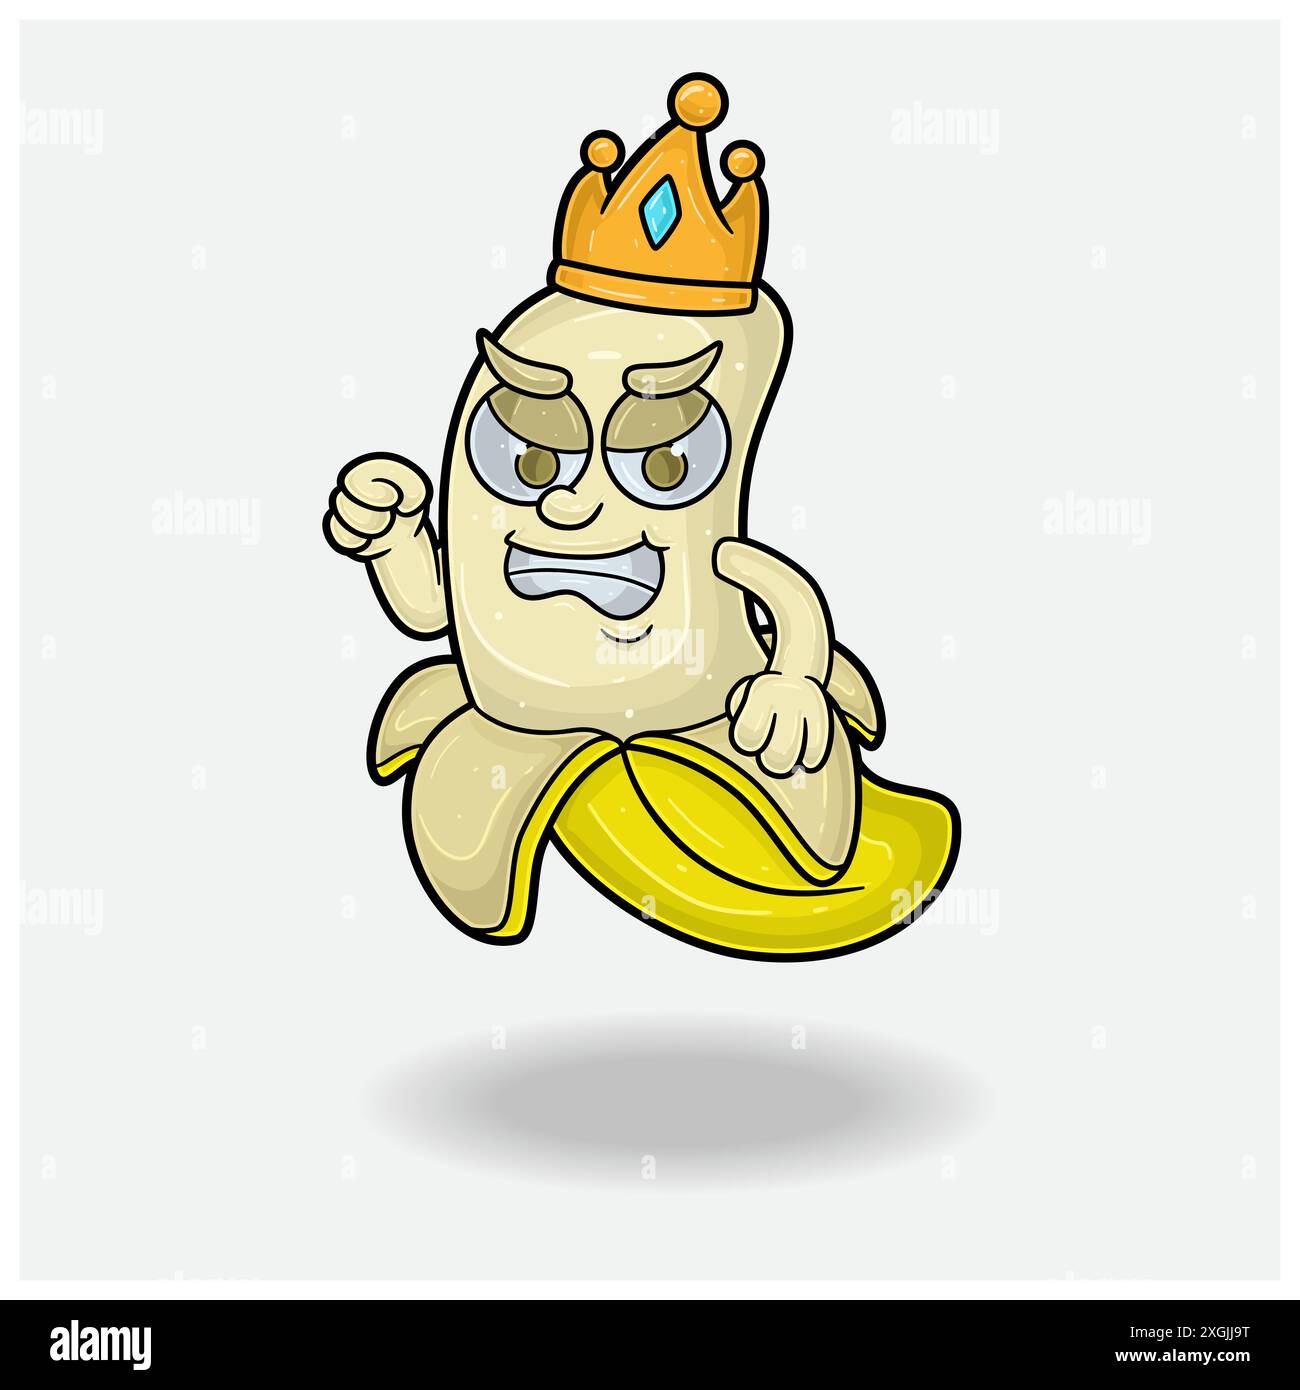 Personaggio di banana Mascot Cartoon con espressione arrabbiata. Per marchio, etichetta, imballaggio e prodotto. Illustrazioni vettoriali Illustrazione Vettoriale